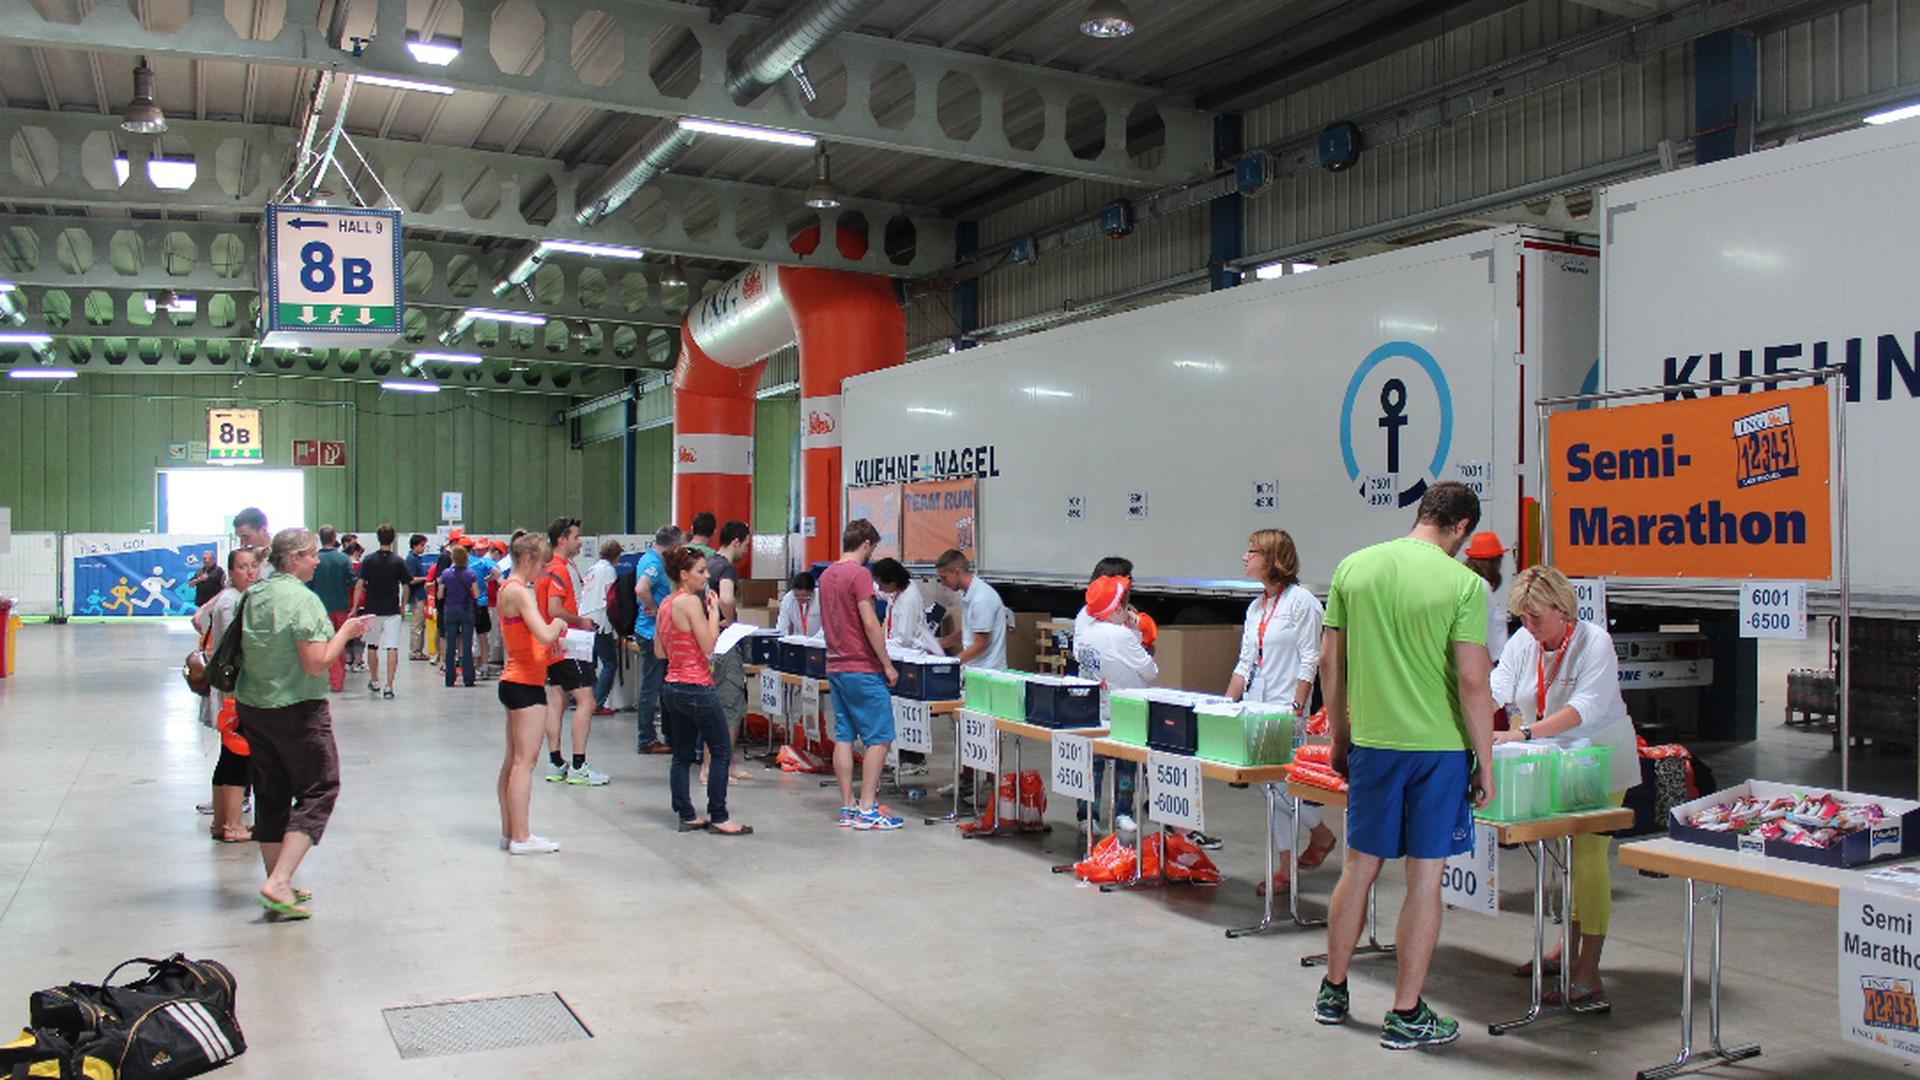 A LuxExpo engalanou-se para acolher todos os participantes na Maratona do Luxemburgo